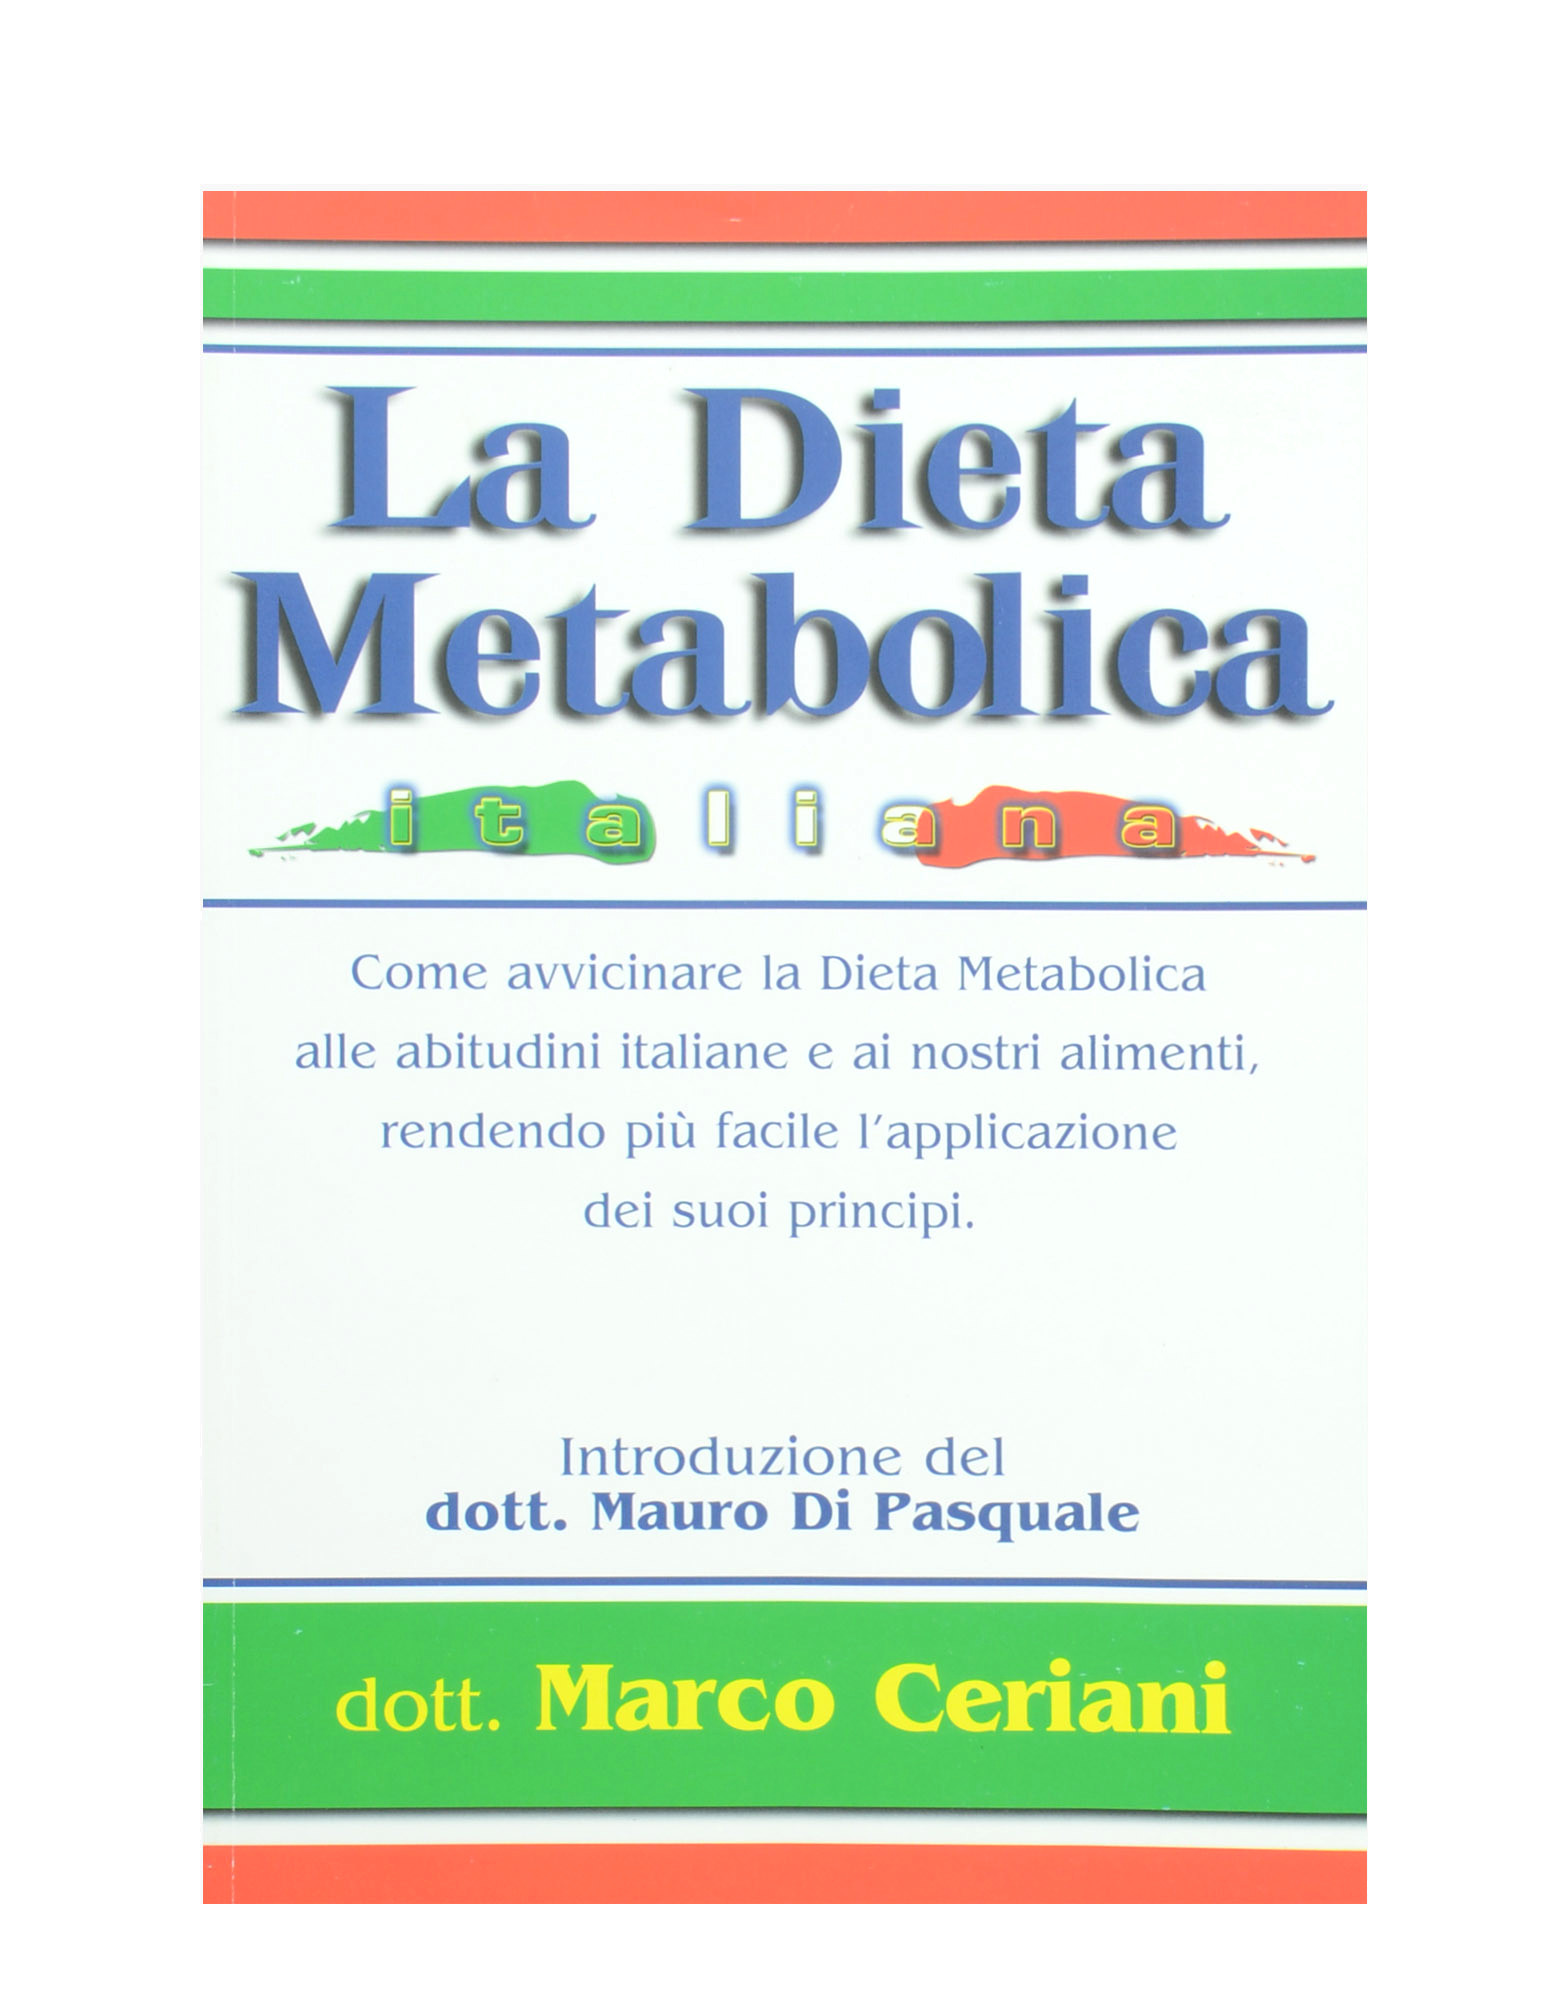 Dieta metabolică: slăbești până la 20 kg în 13 zile - AlistMagazine by Andreea Esca